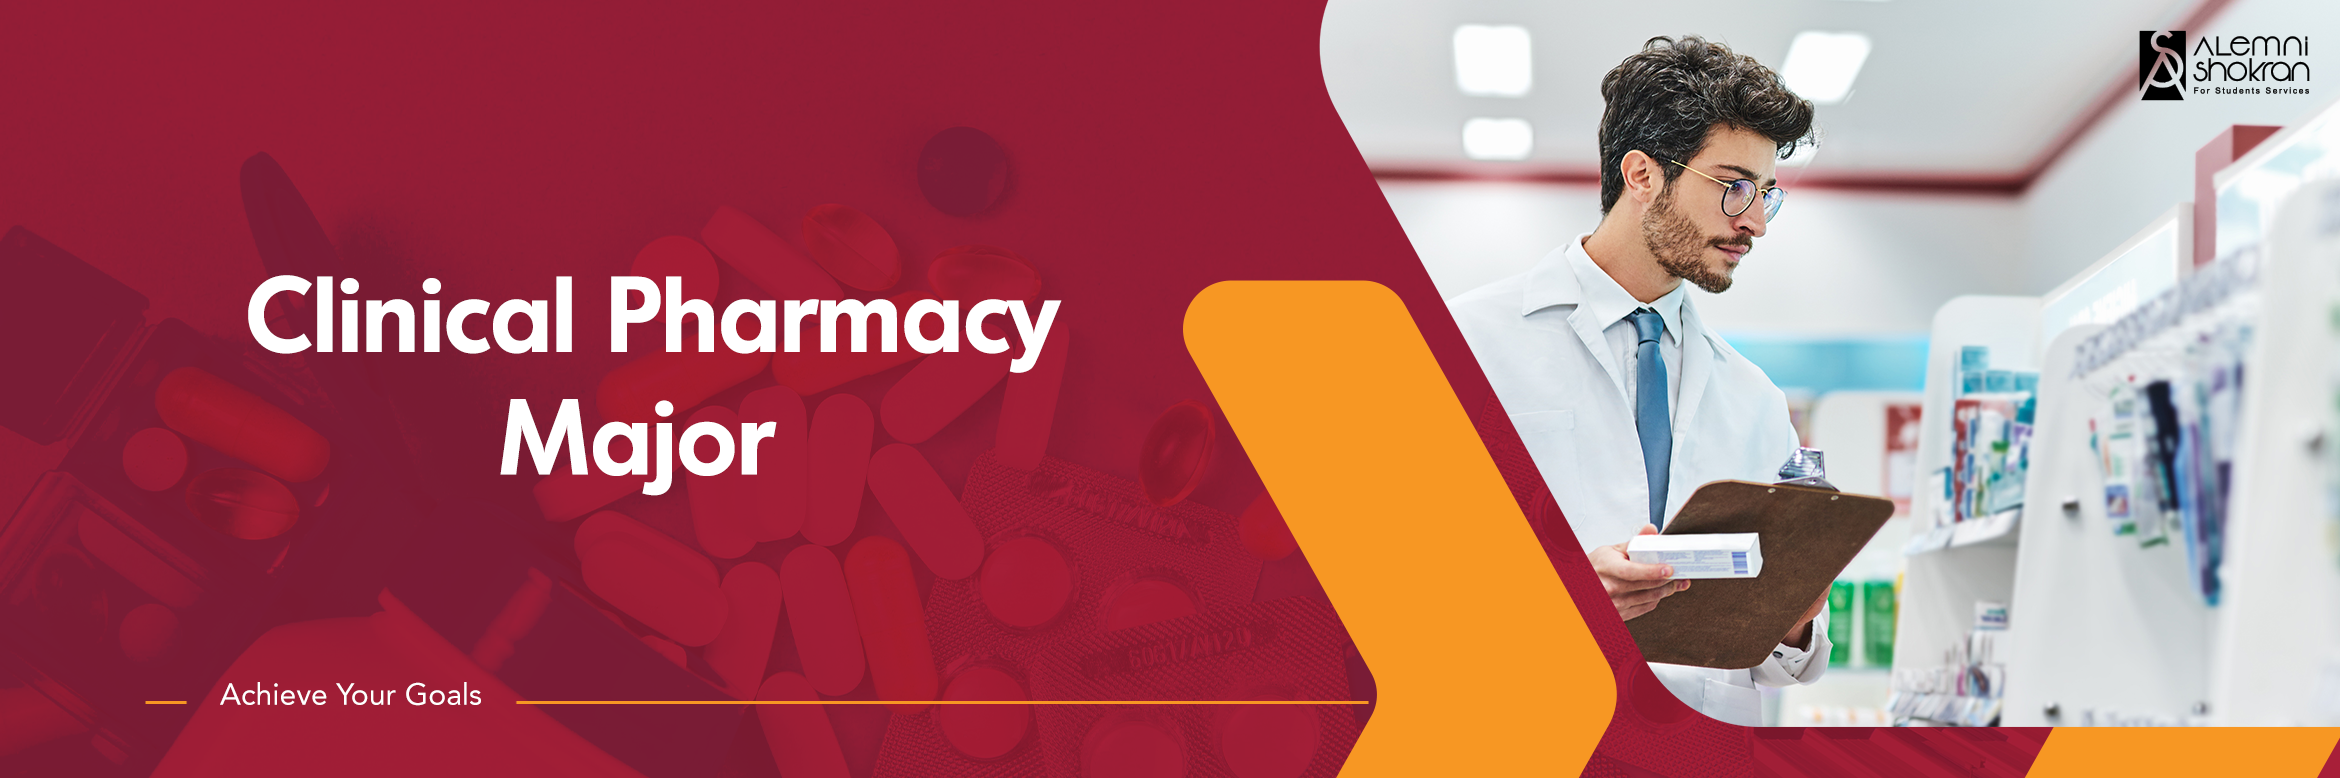 Clinical-Pharmacy-Major